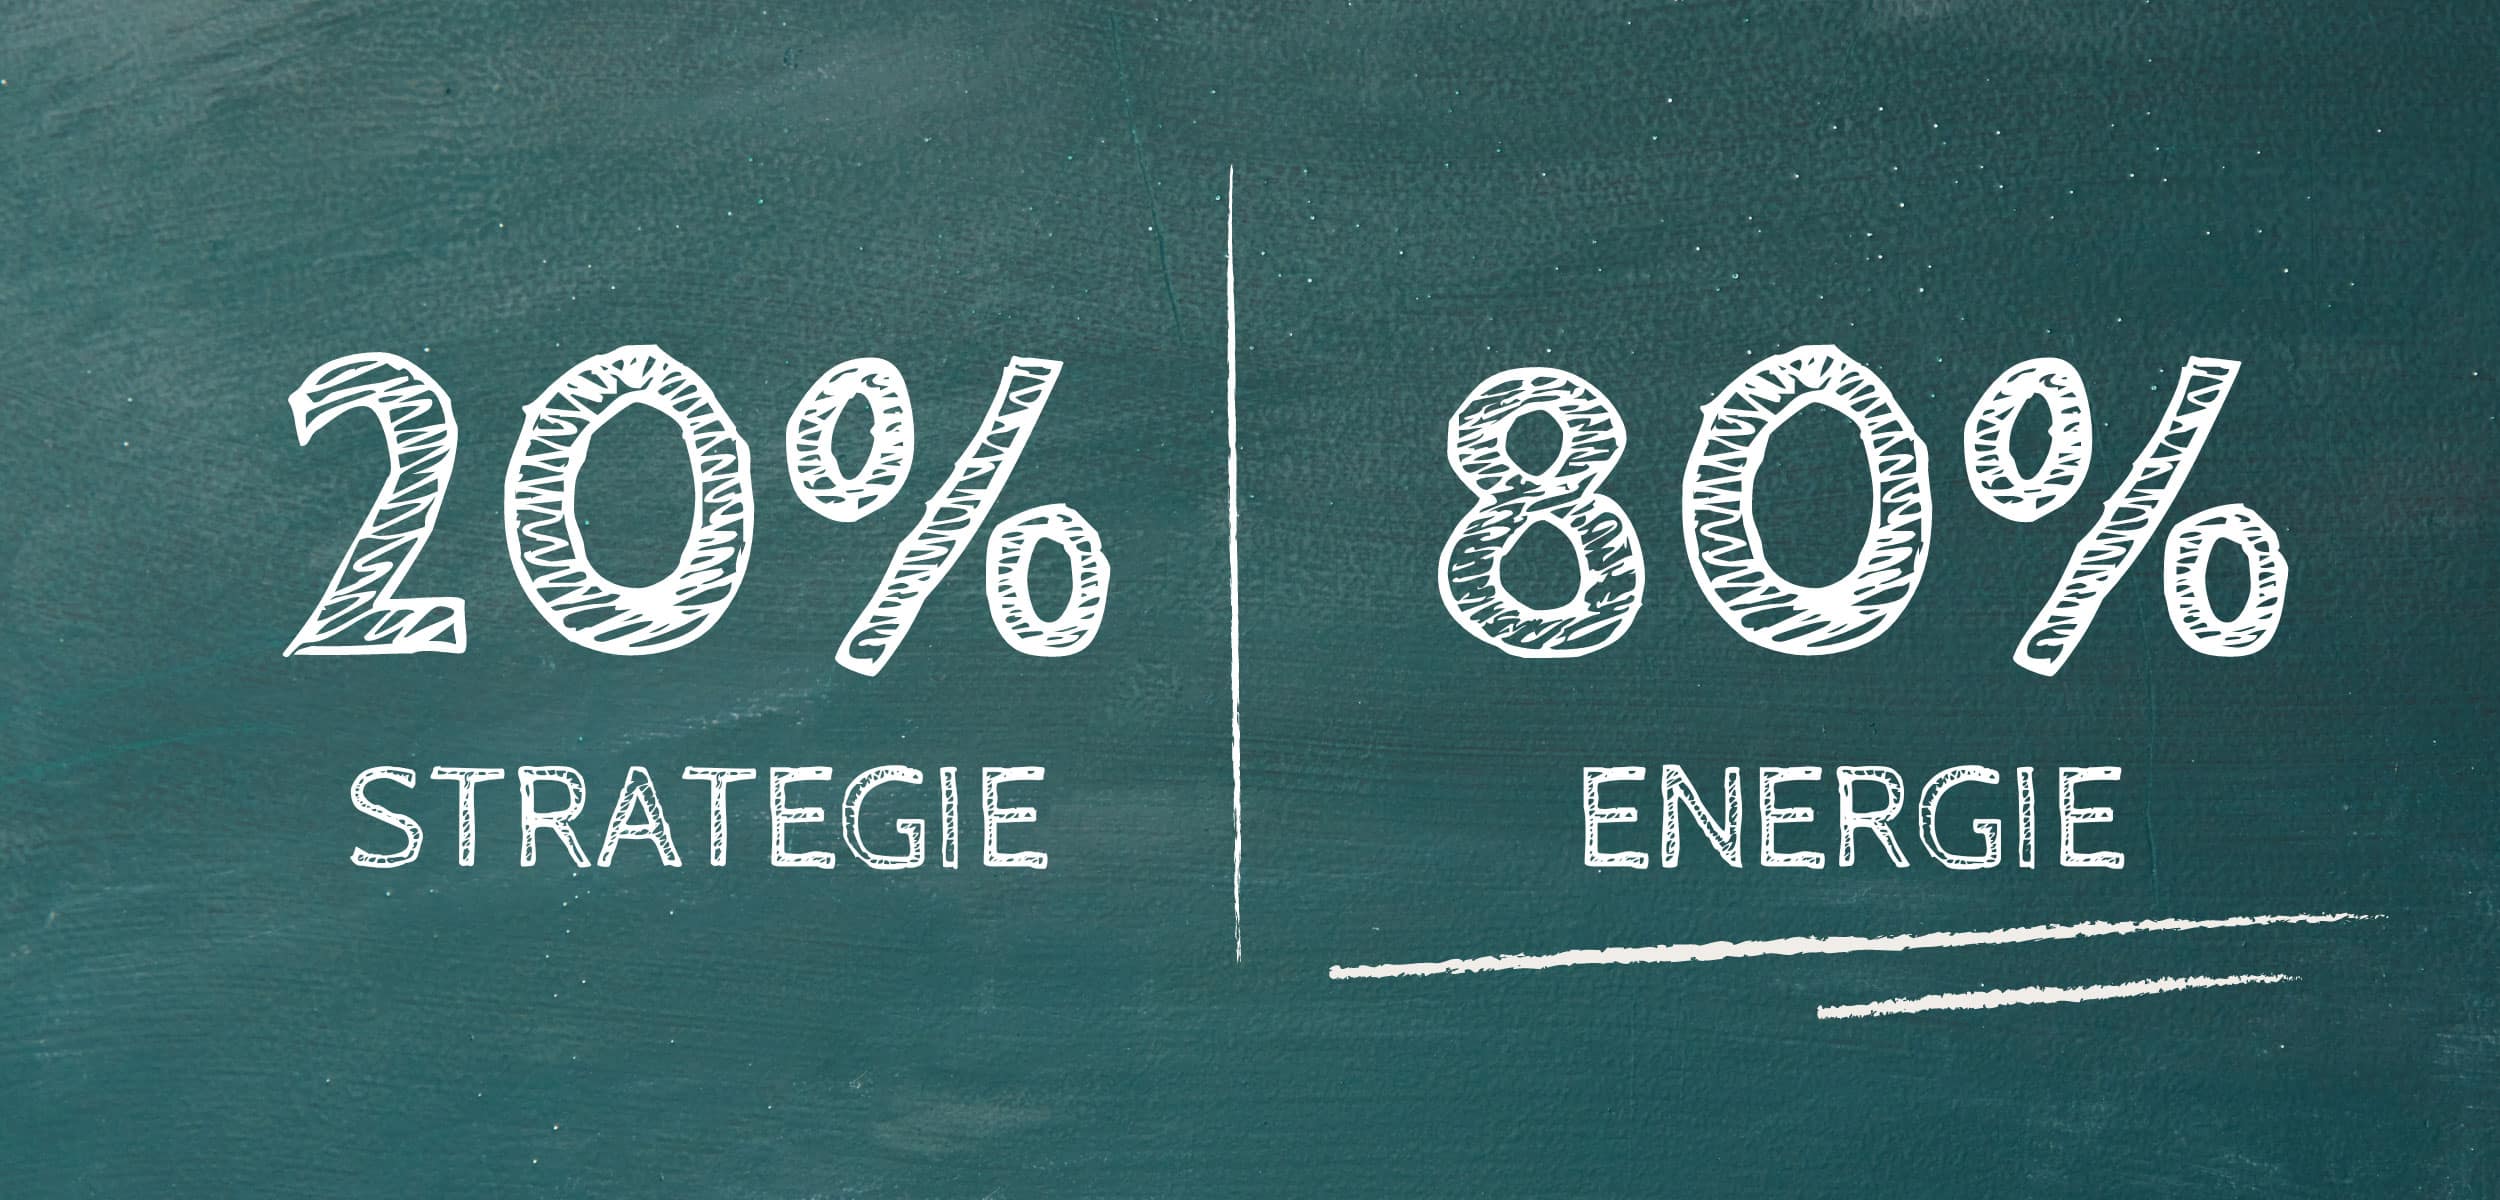 Anja Pairoux | 20% is Strategie, 80% is Energie